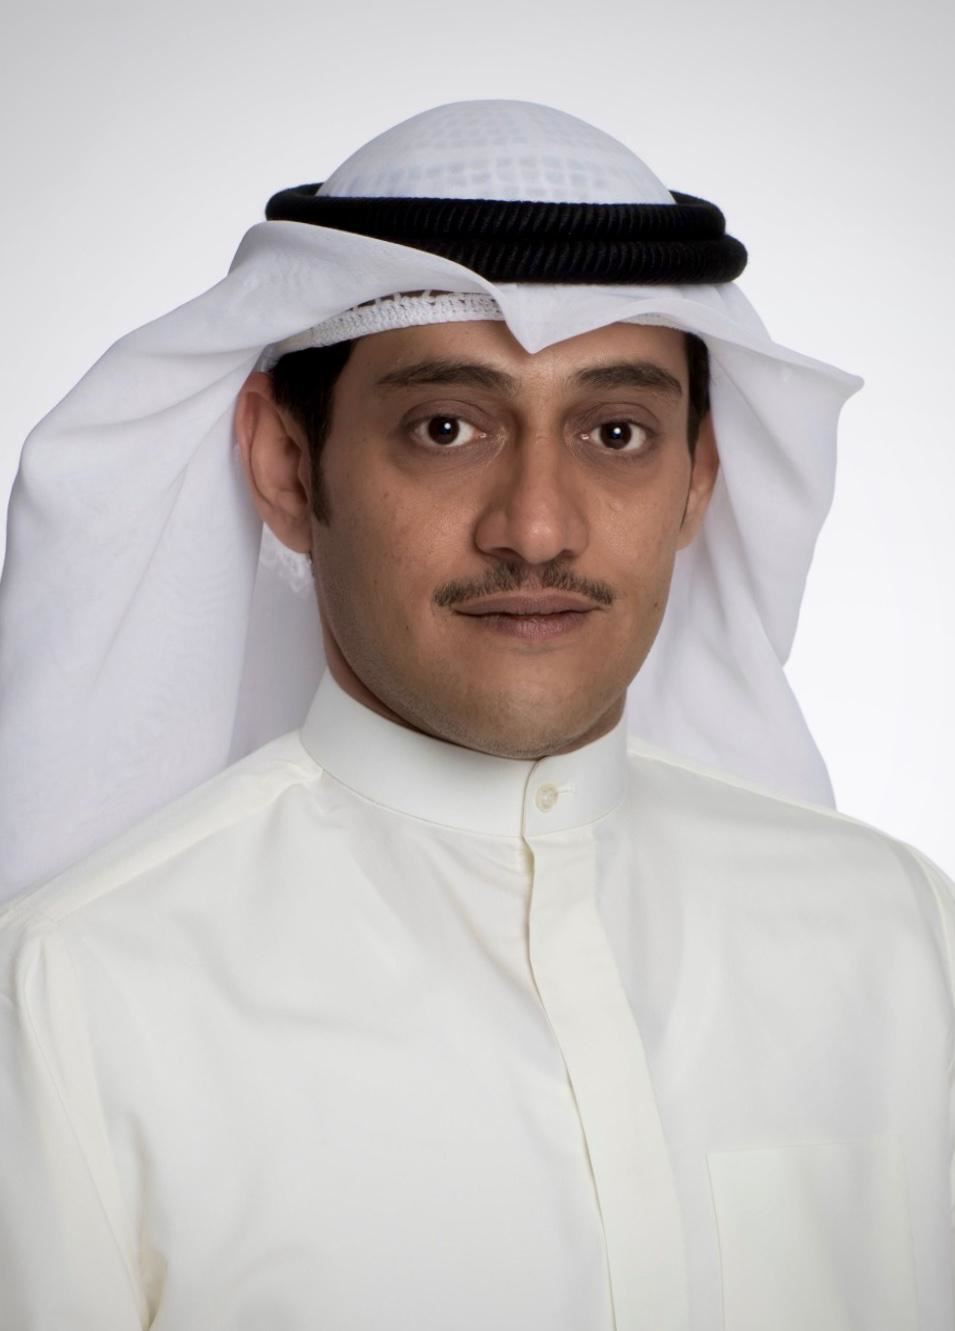 طلال جاسم الخرافي - رئيس مجلس إدارة النادي العلمي الكويتي